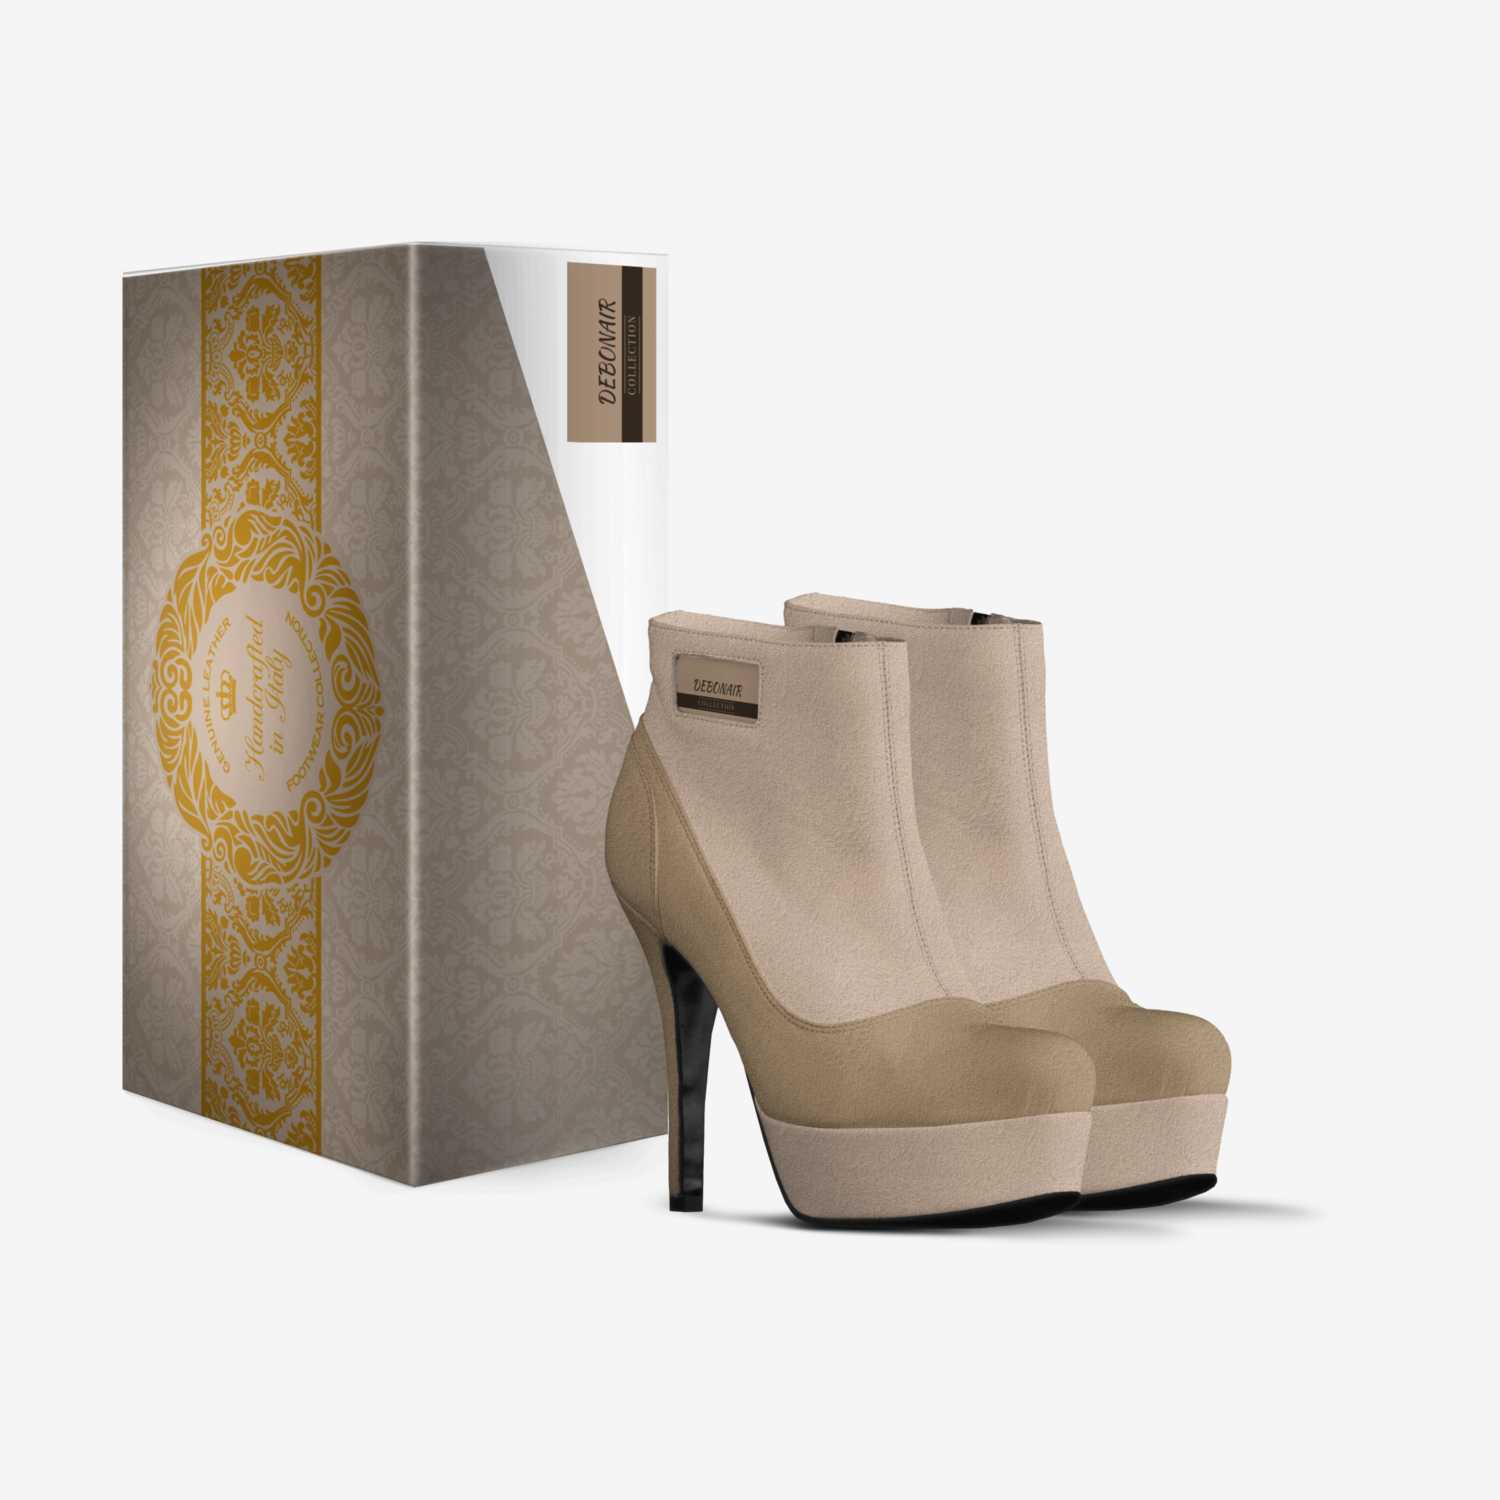 DEBONAIR custom made in Italy shoes by Priya Kolhe | Box view